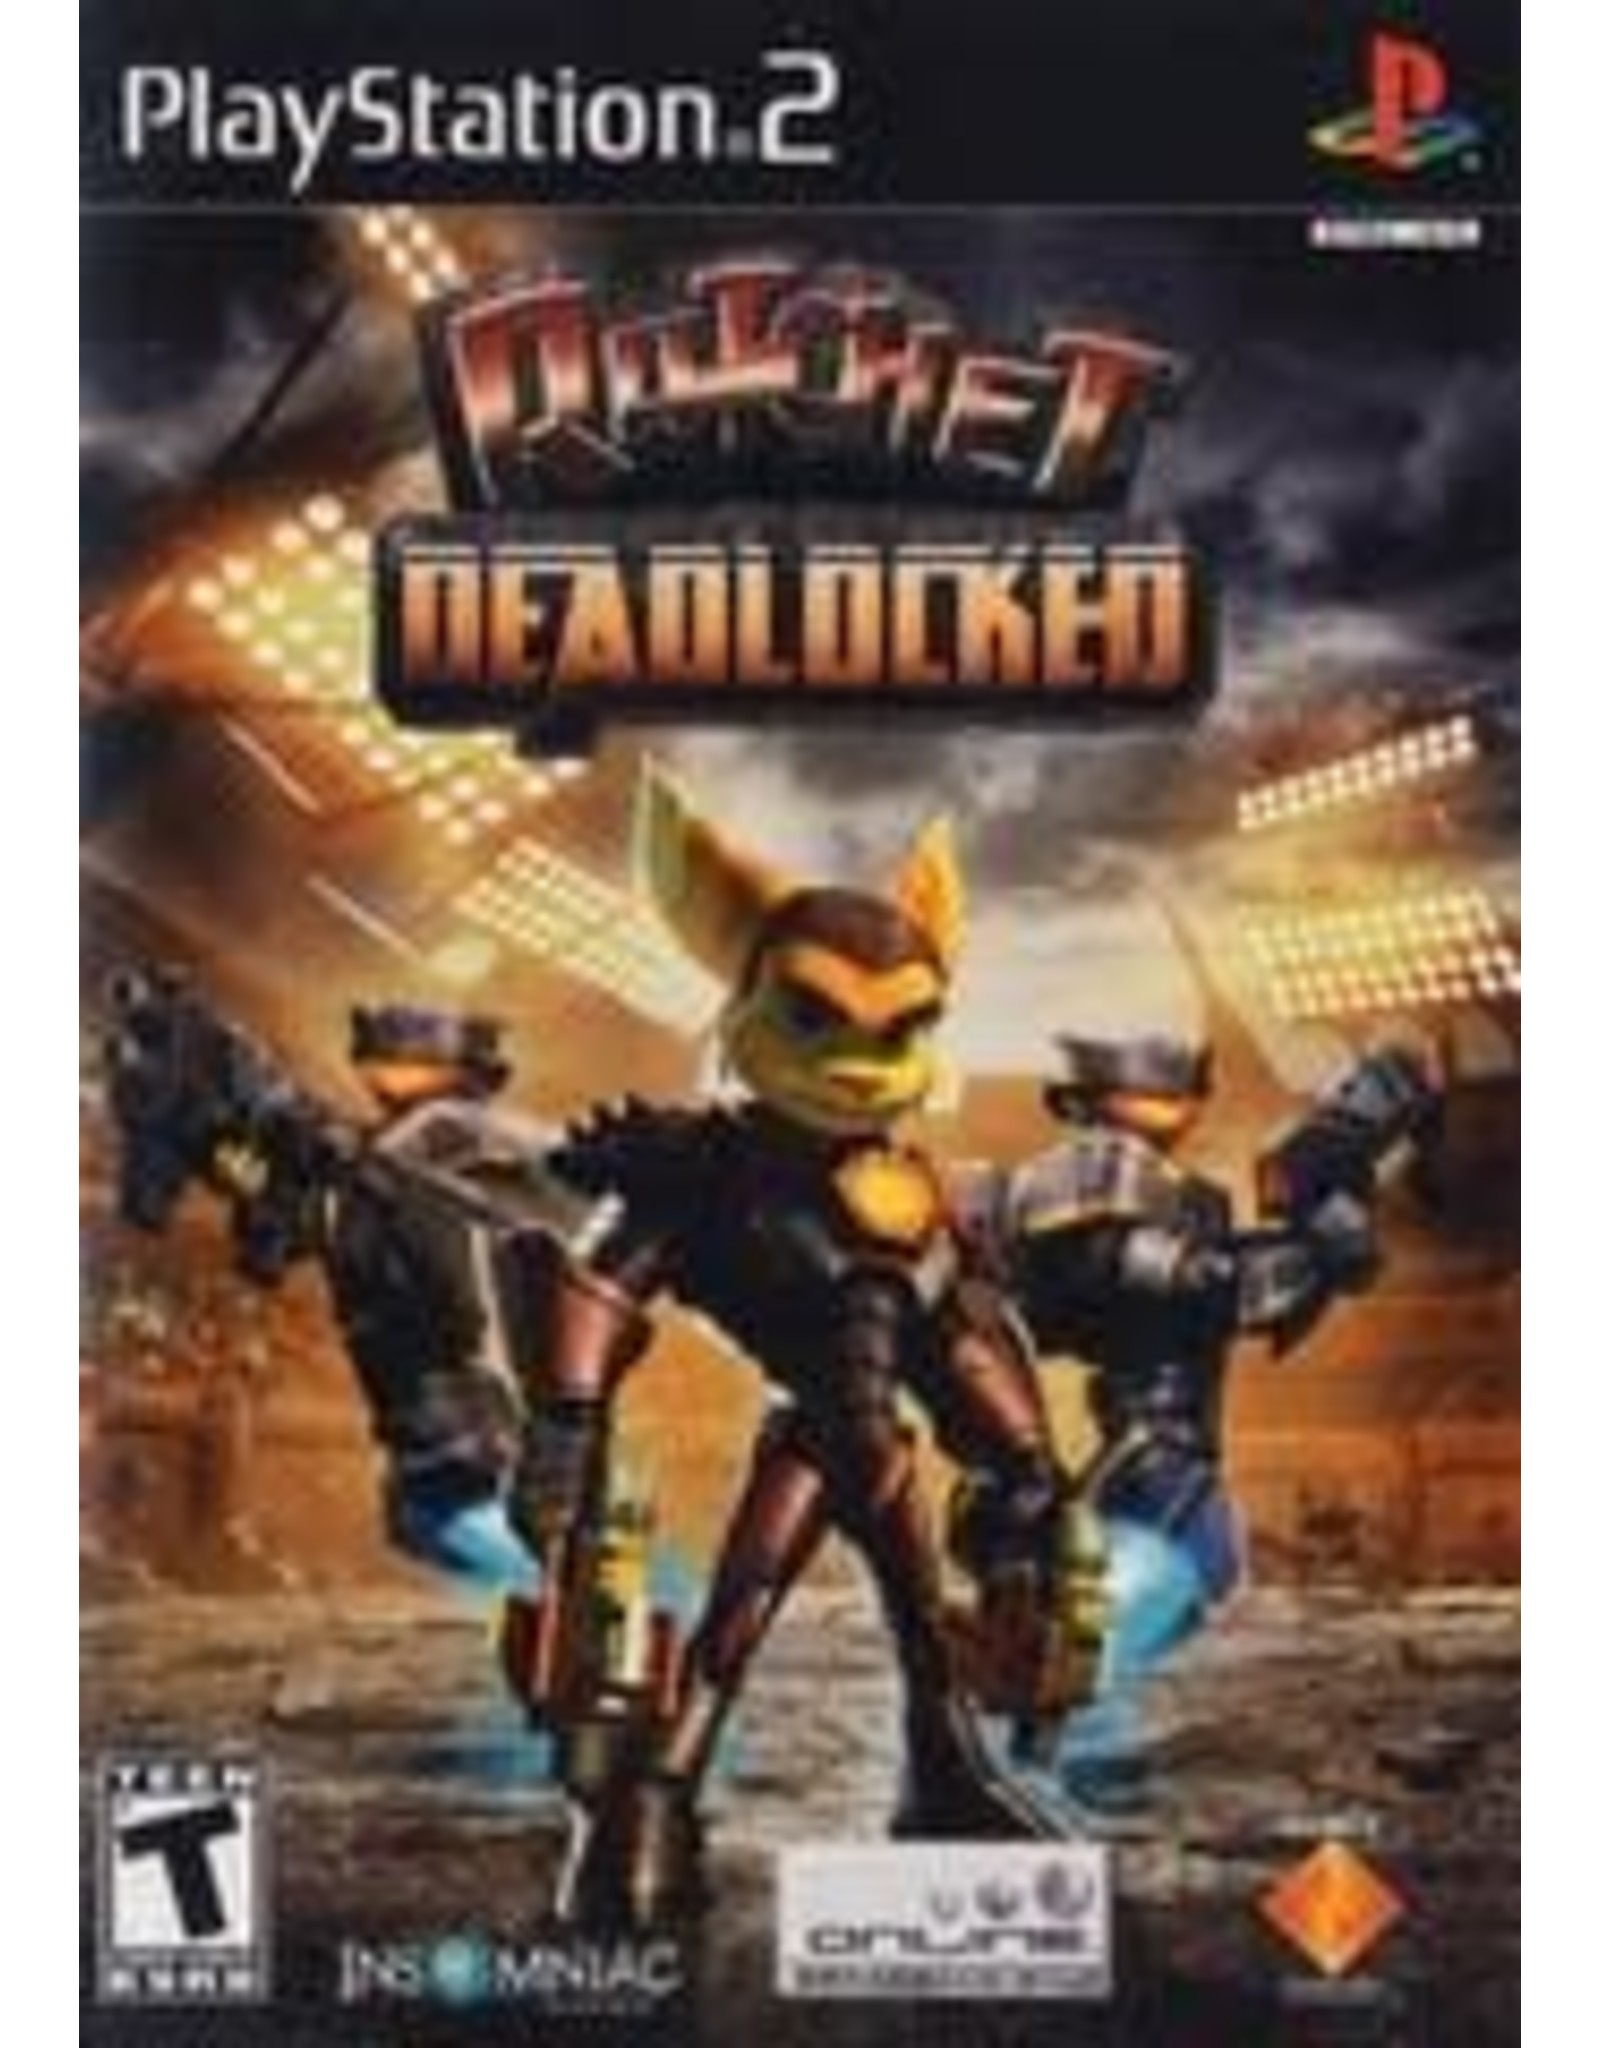 Playstation 2 Ratchet Deadlocked (CiB)